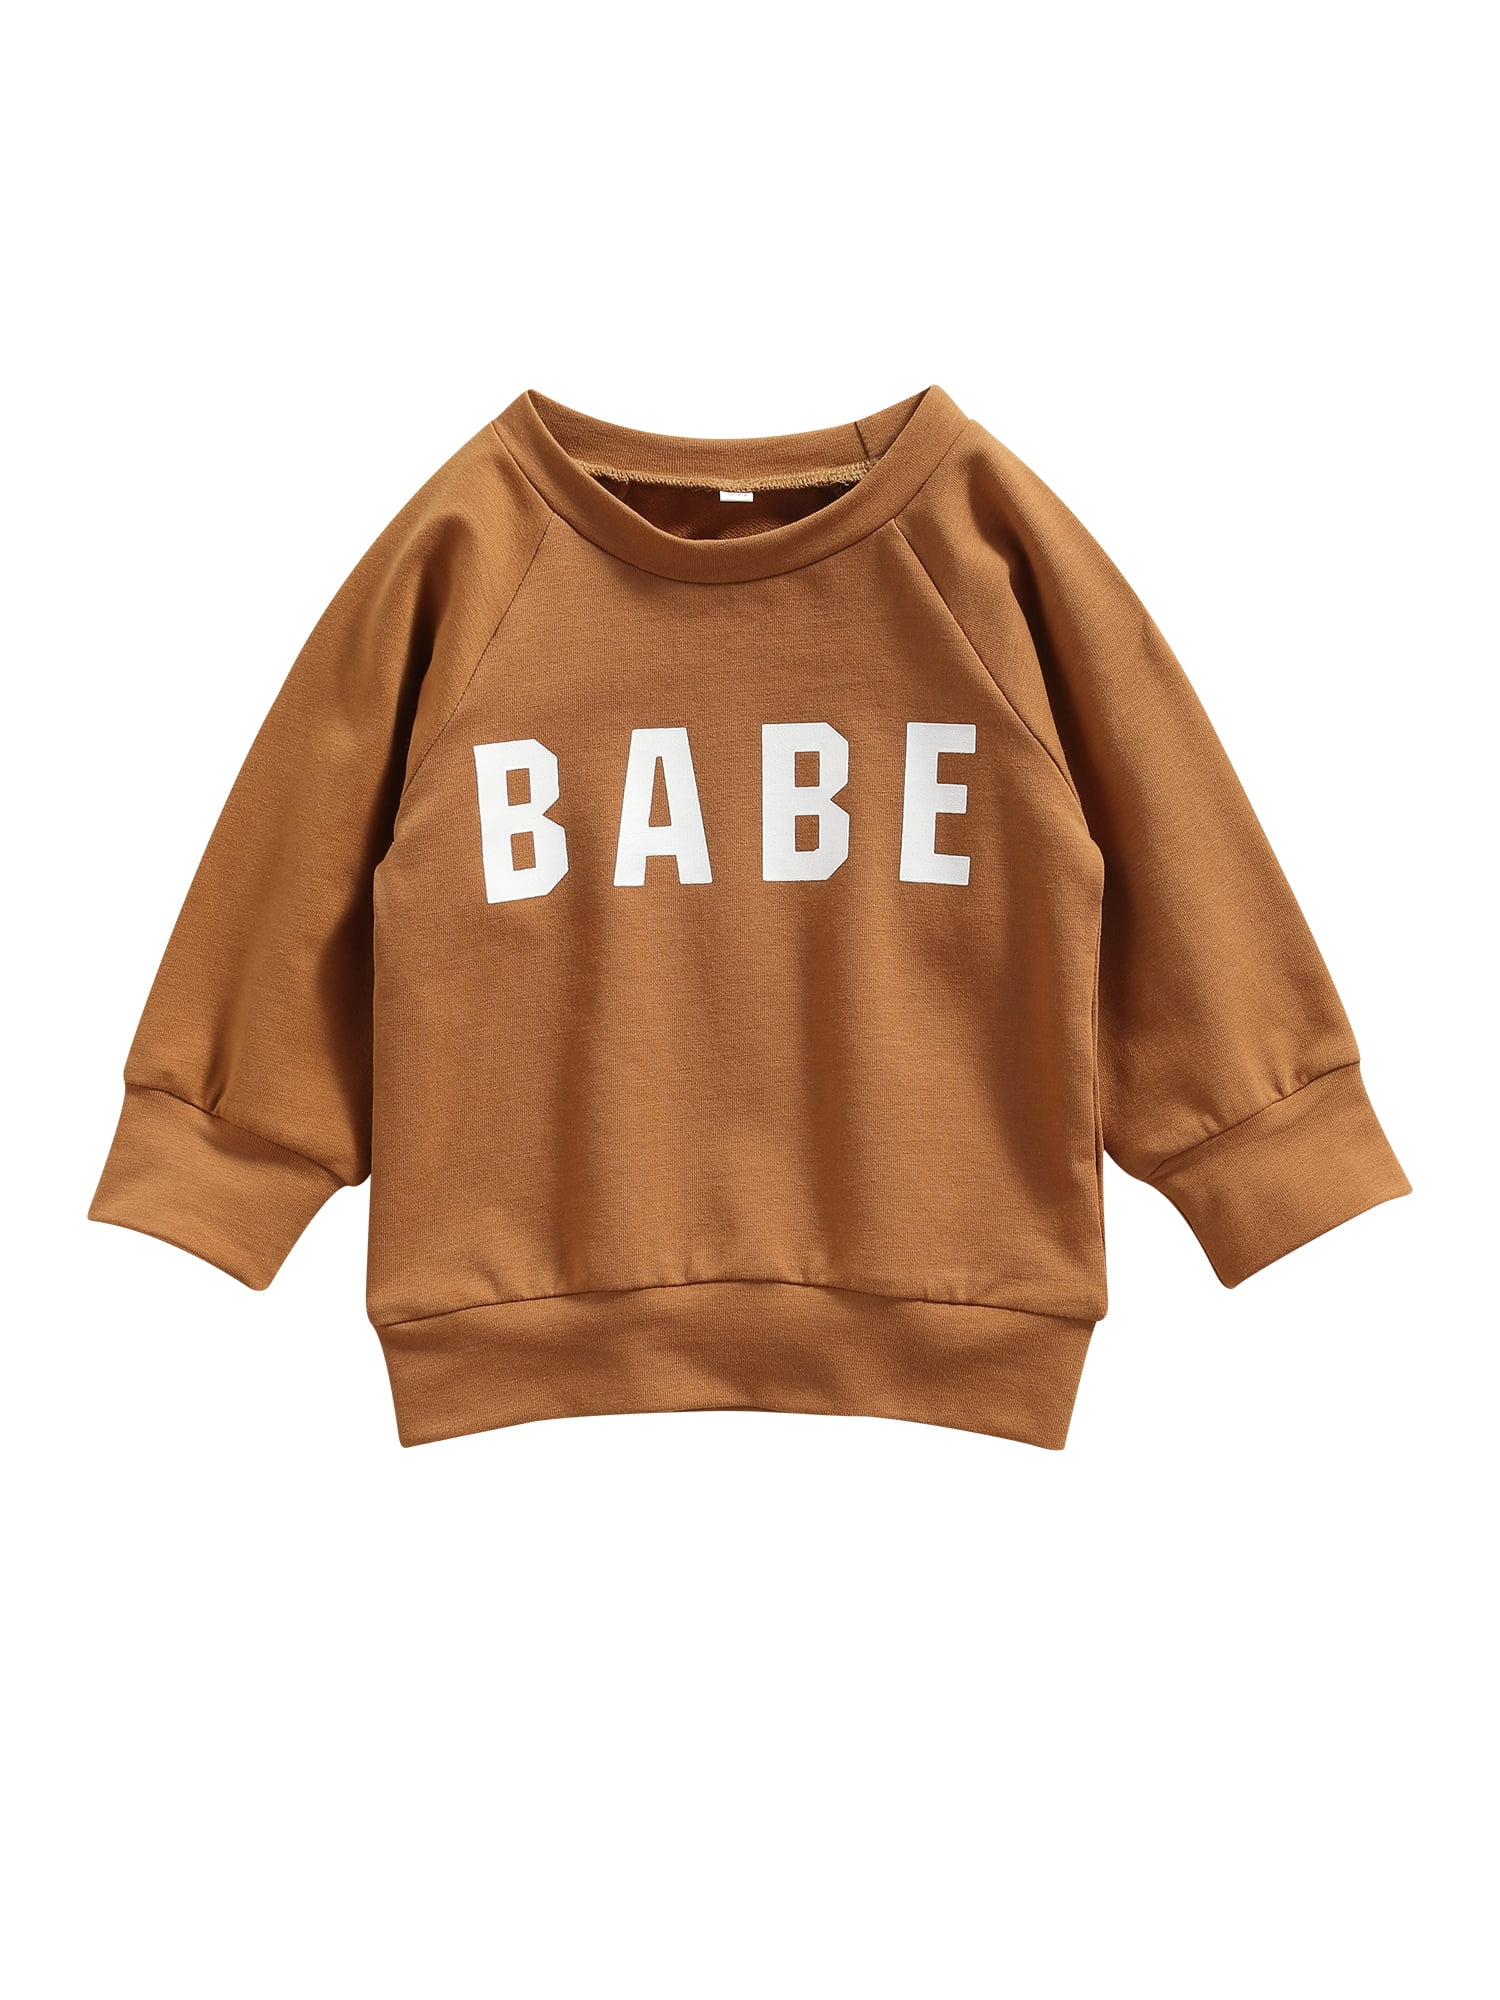 Toddler Teen Kids Baby Boy 3D Stripe Print Sweatshirt Pocket Pullover Hoodie Tops